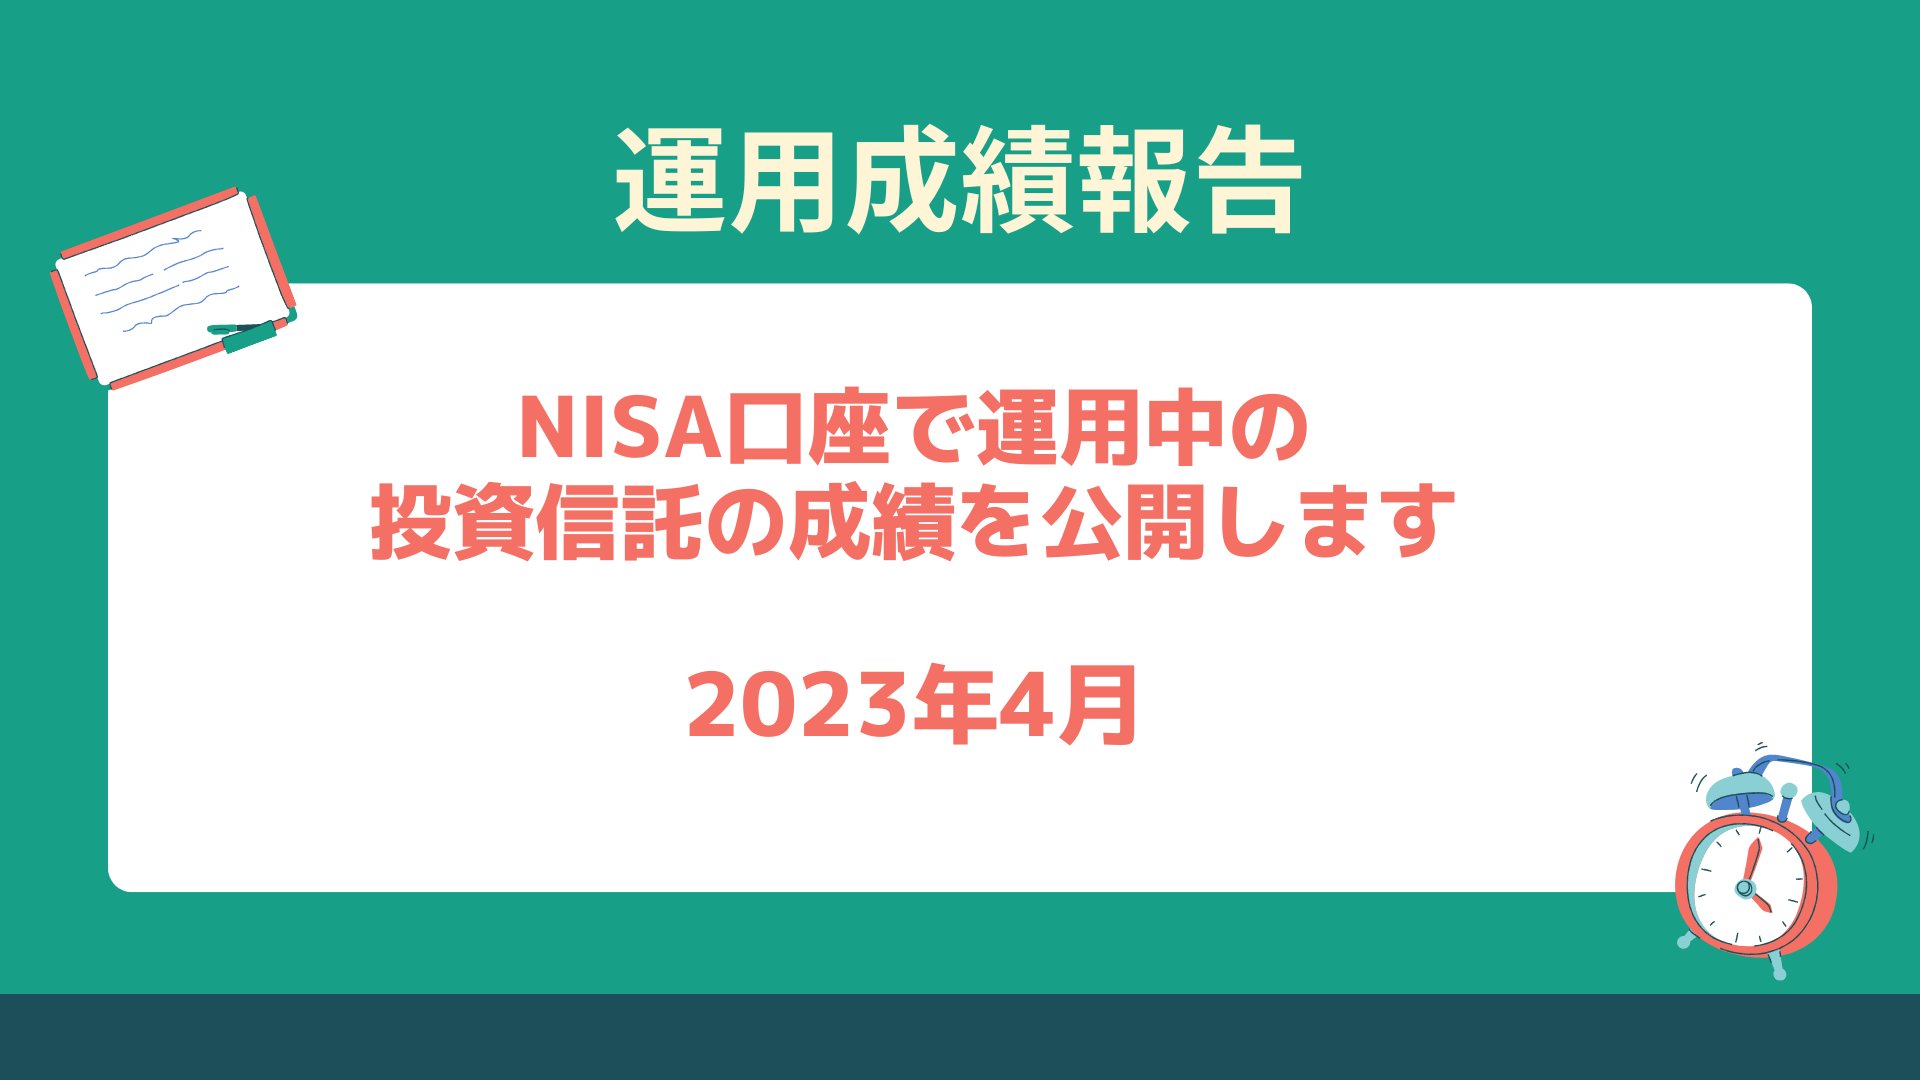 NISA運用成績2023 つみたて